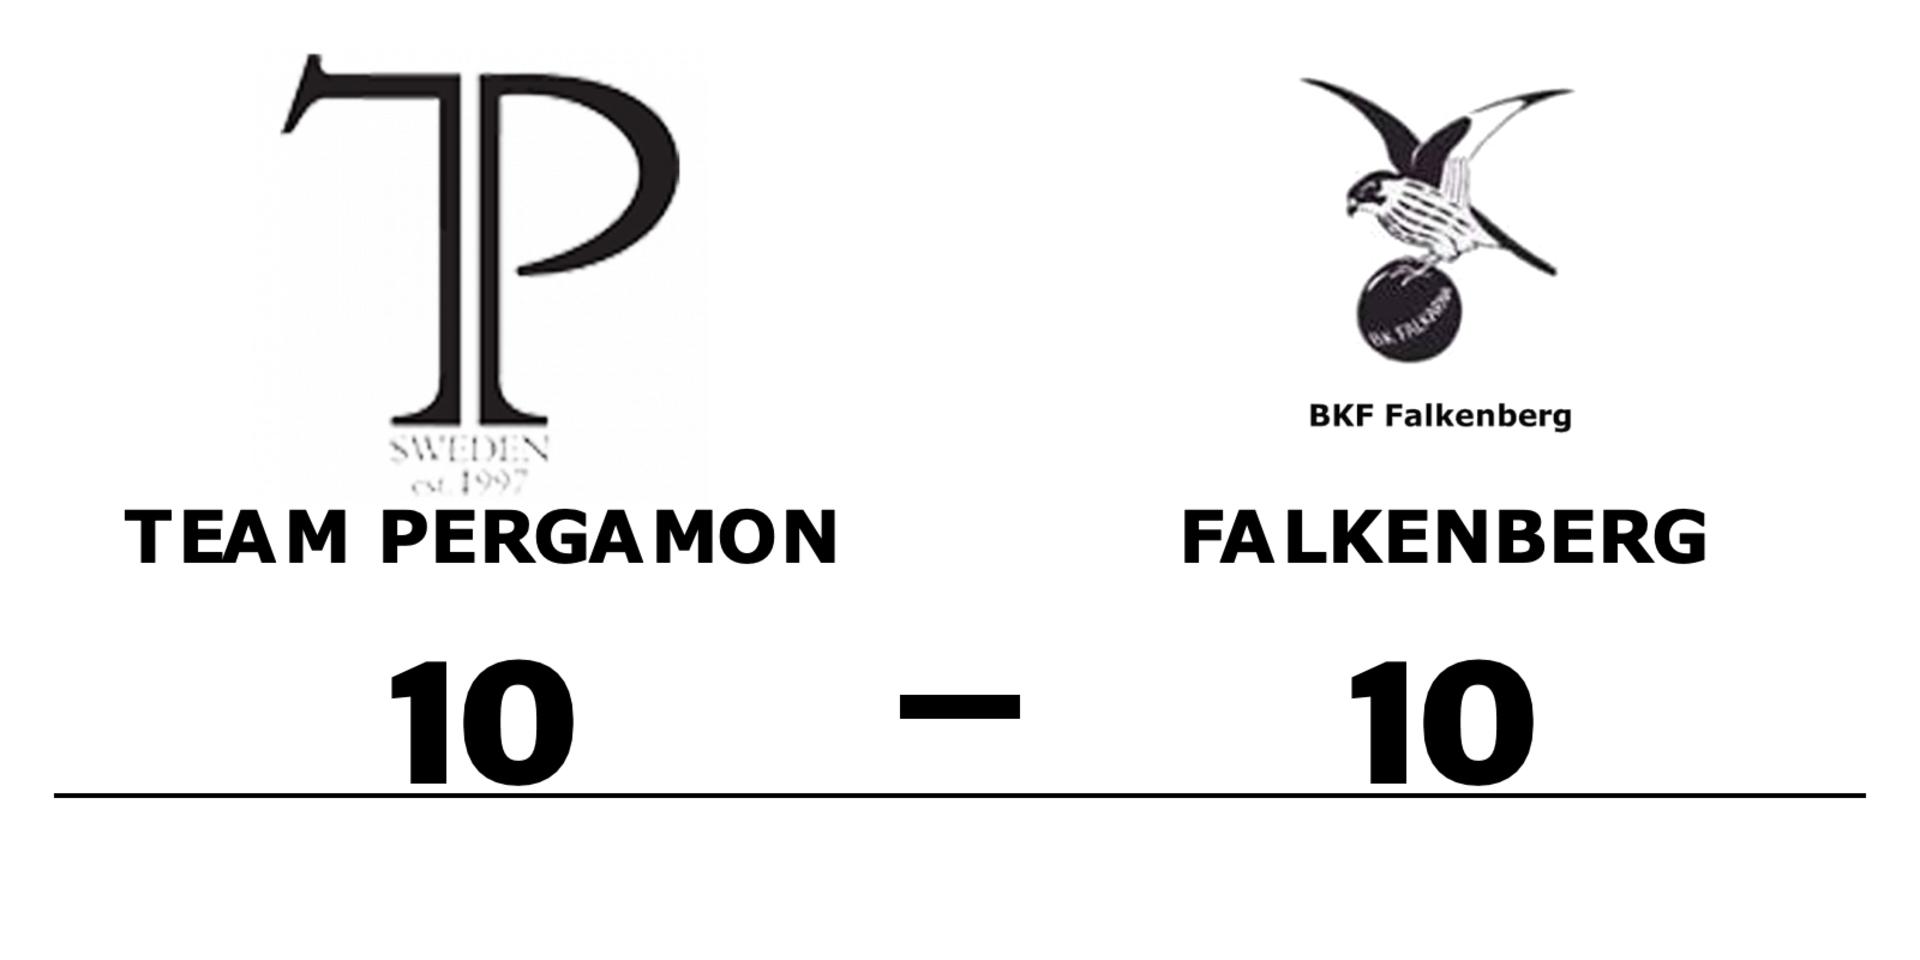 Team Pergamon spelade lika mot Falkenberg